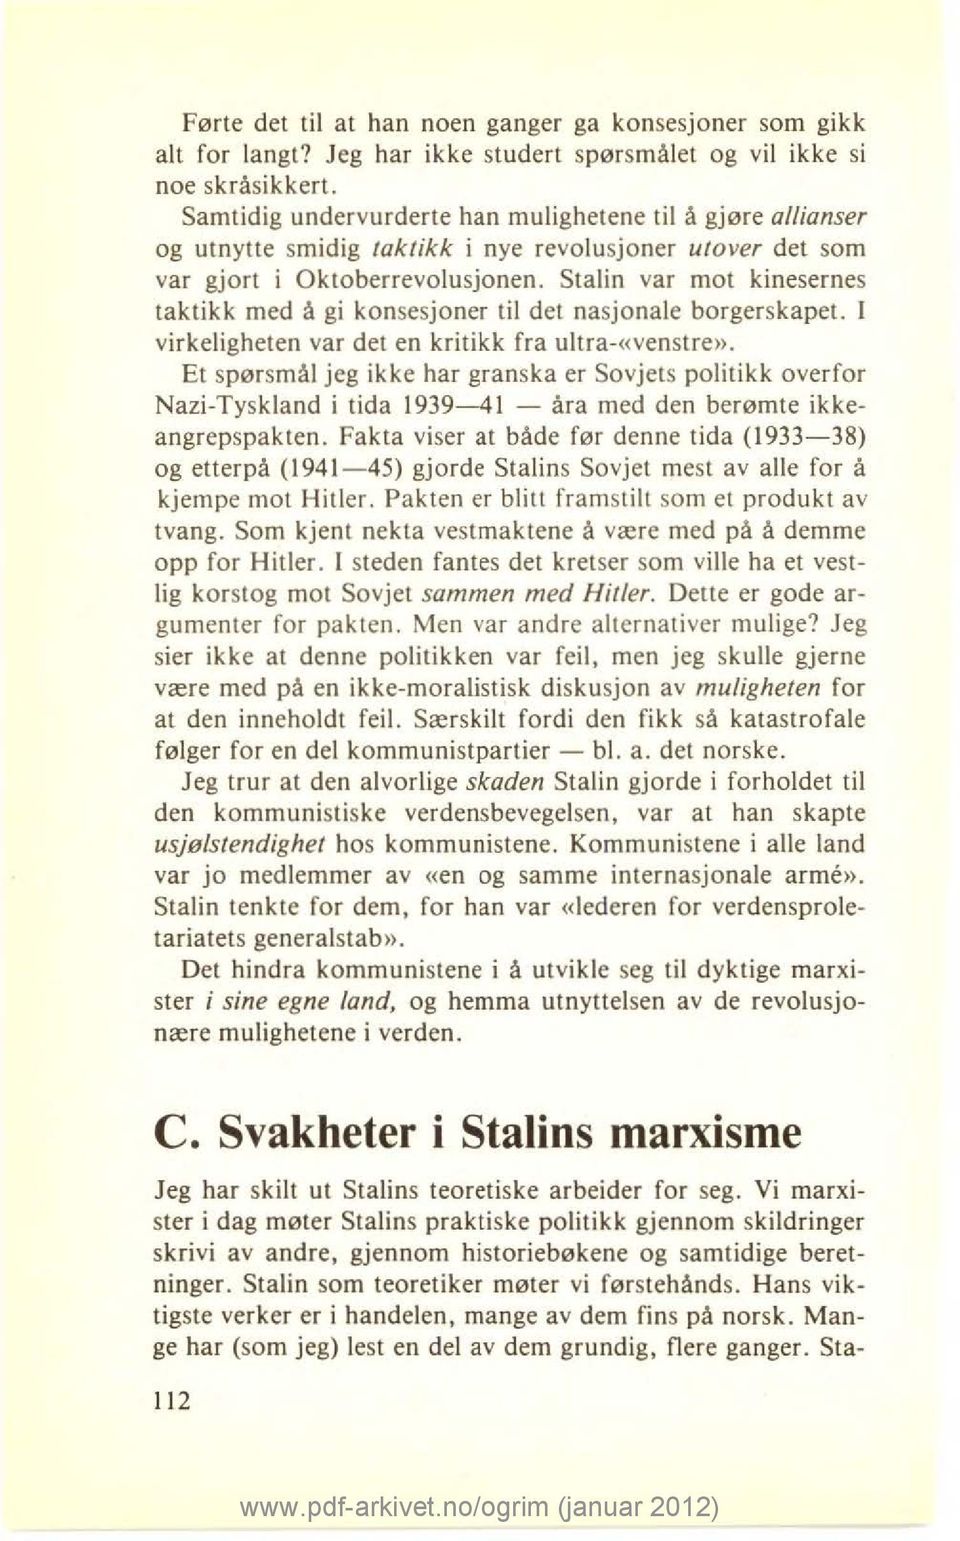 Stalin var mot kinesernes taktikk med å gi konsesjoner til det nasjonale borgerskapet. I virkeligheten var det en kritikk fra ultra-«venstre».